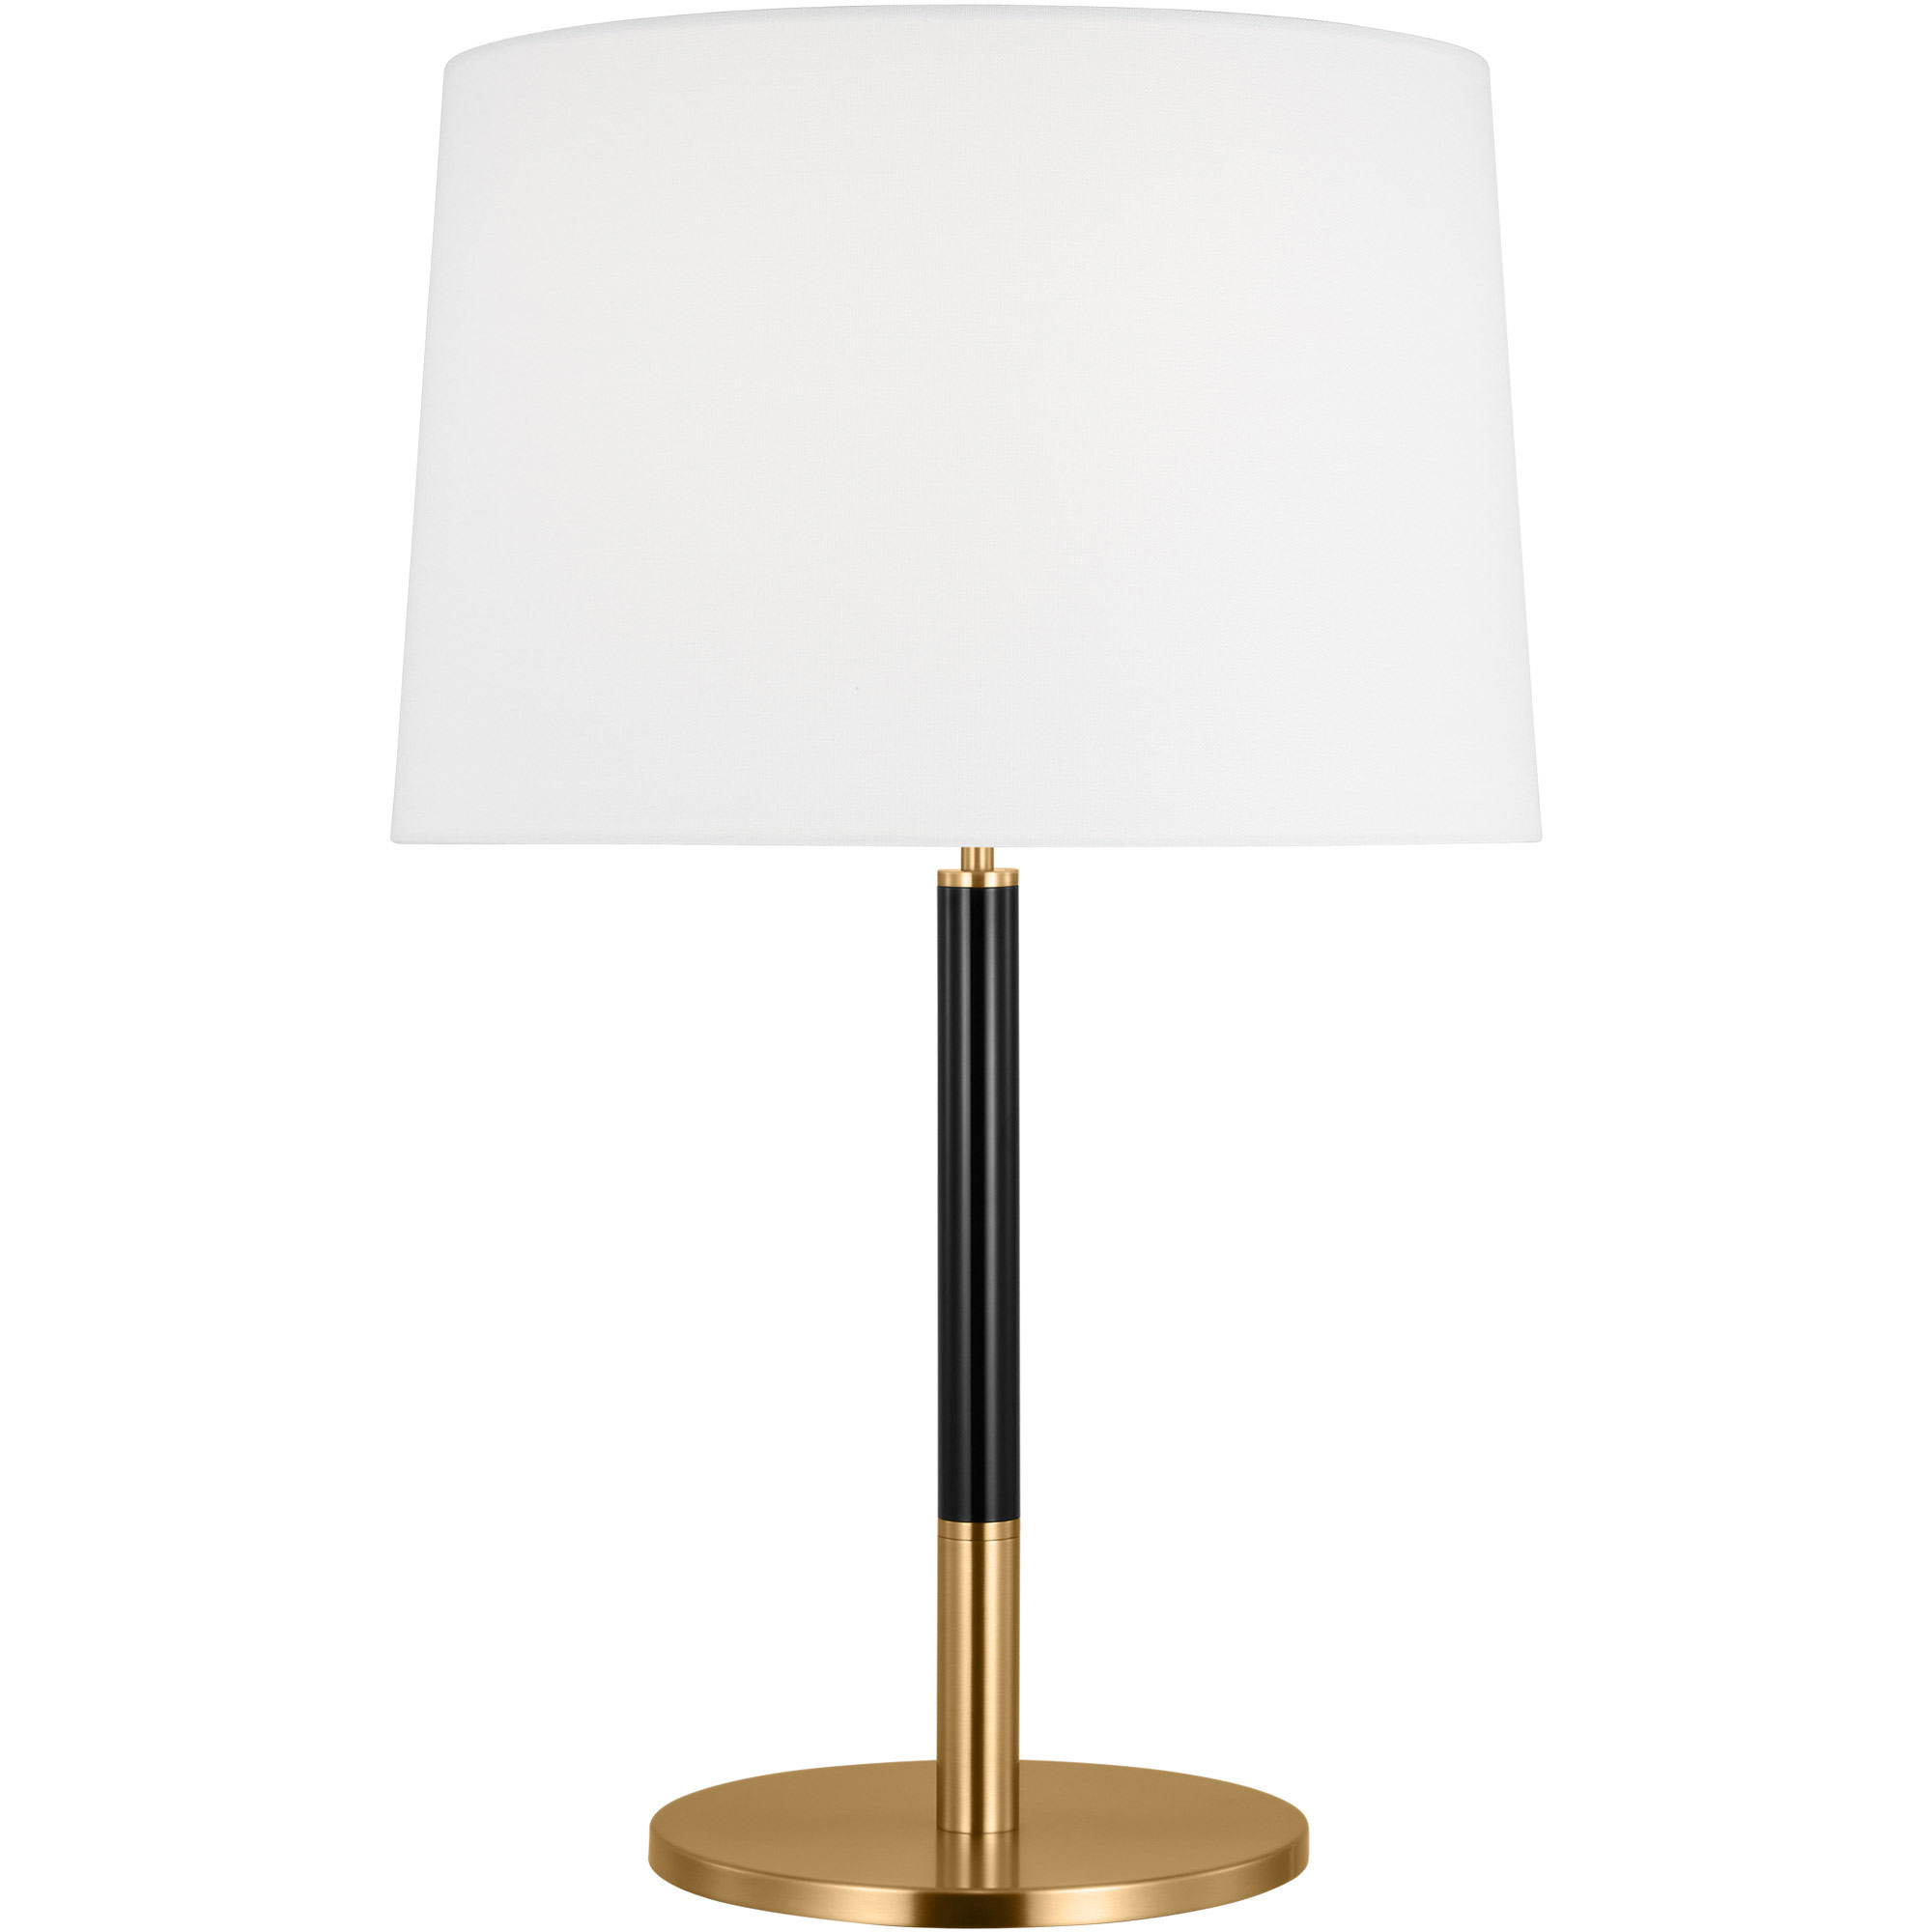 Visual Comfort Studio - KST1051BBSGRN1 - One Light Floor Lamp - Monroe -  Burnished Brass